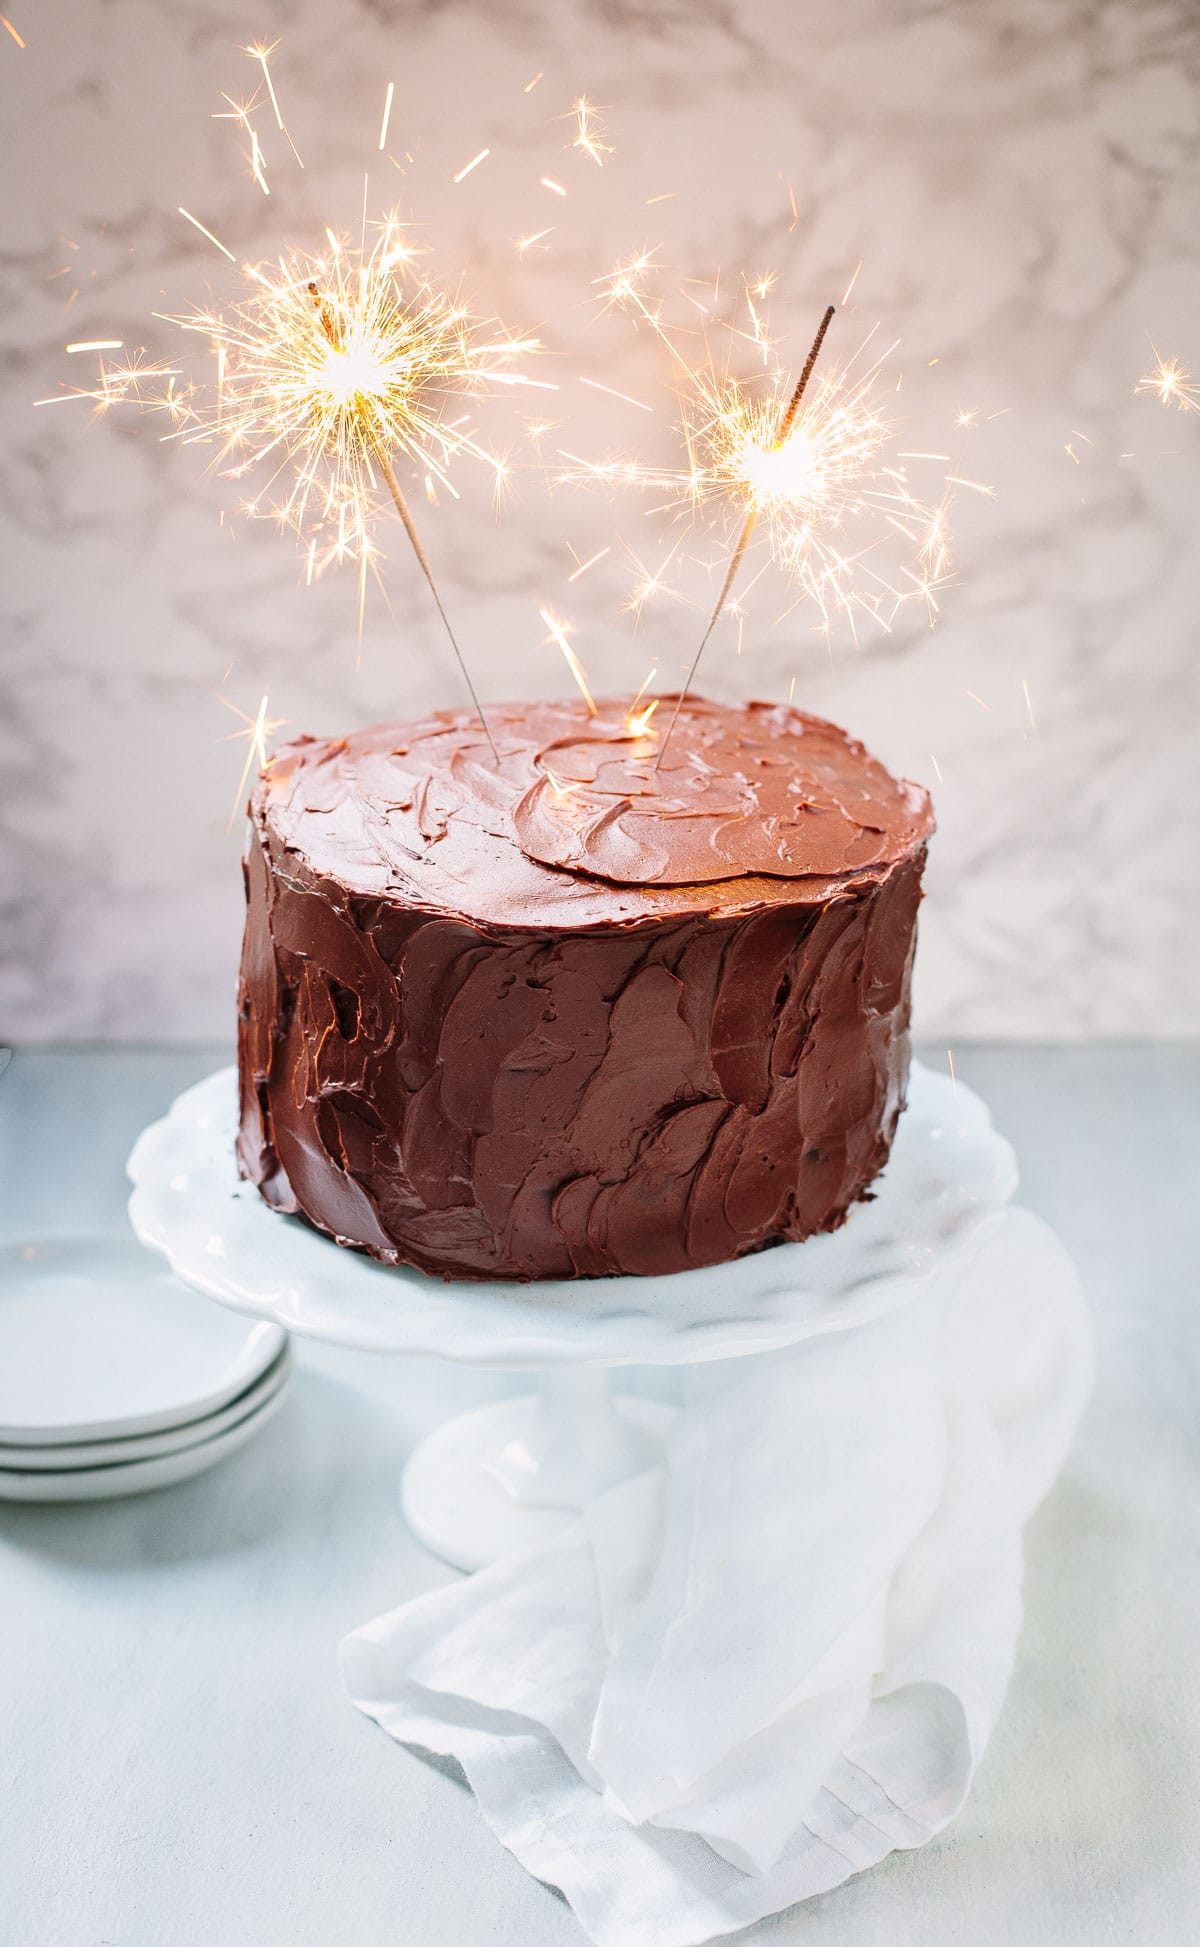 Photo Of Birthday Cake
 Chocolate Birthday Cake with Chocolate Ganache